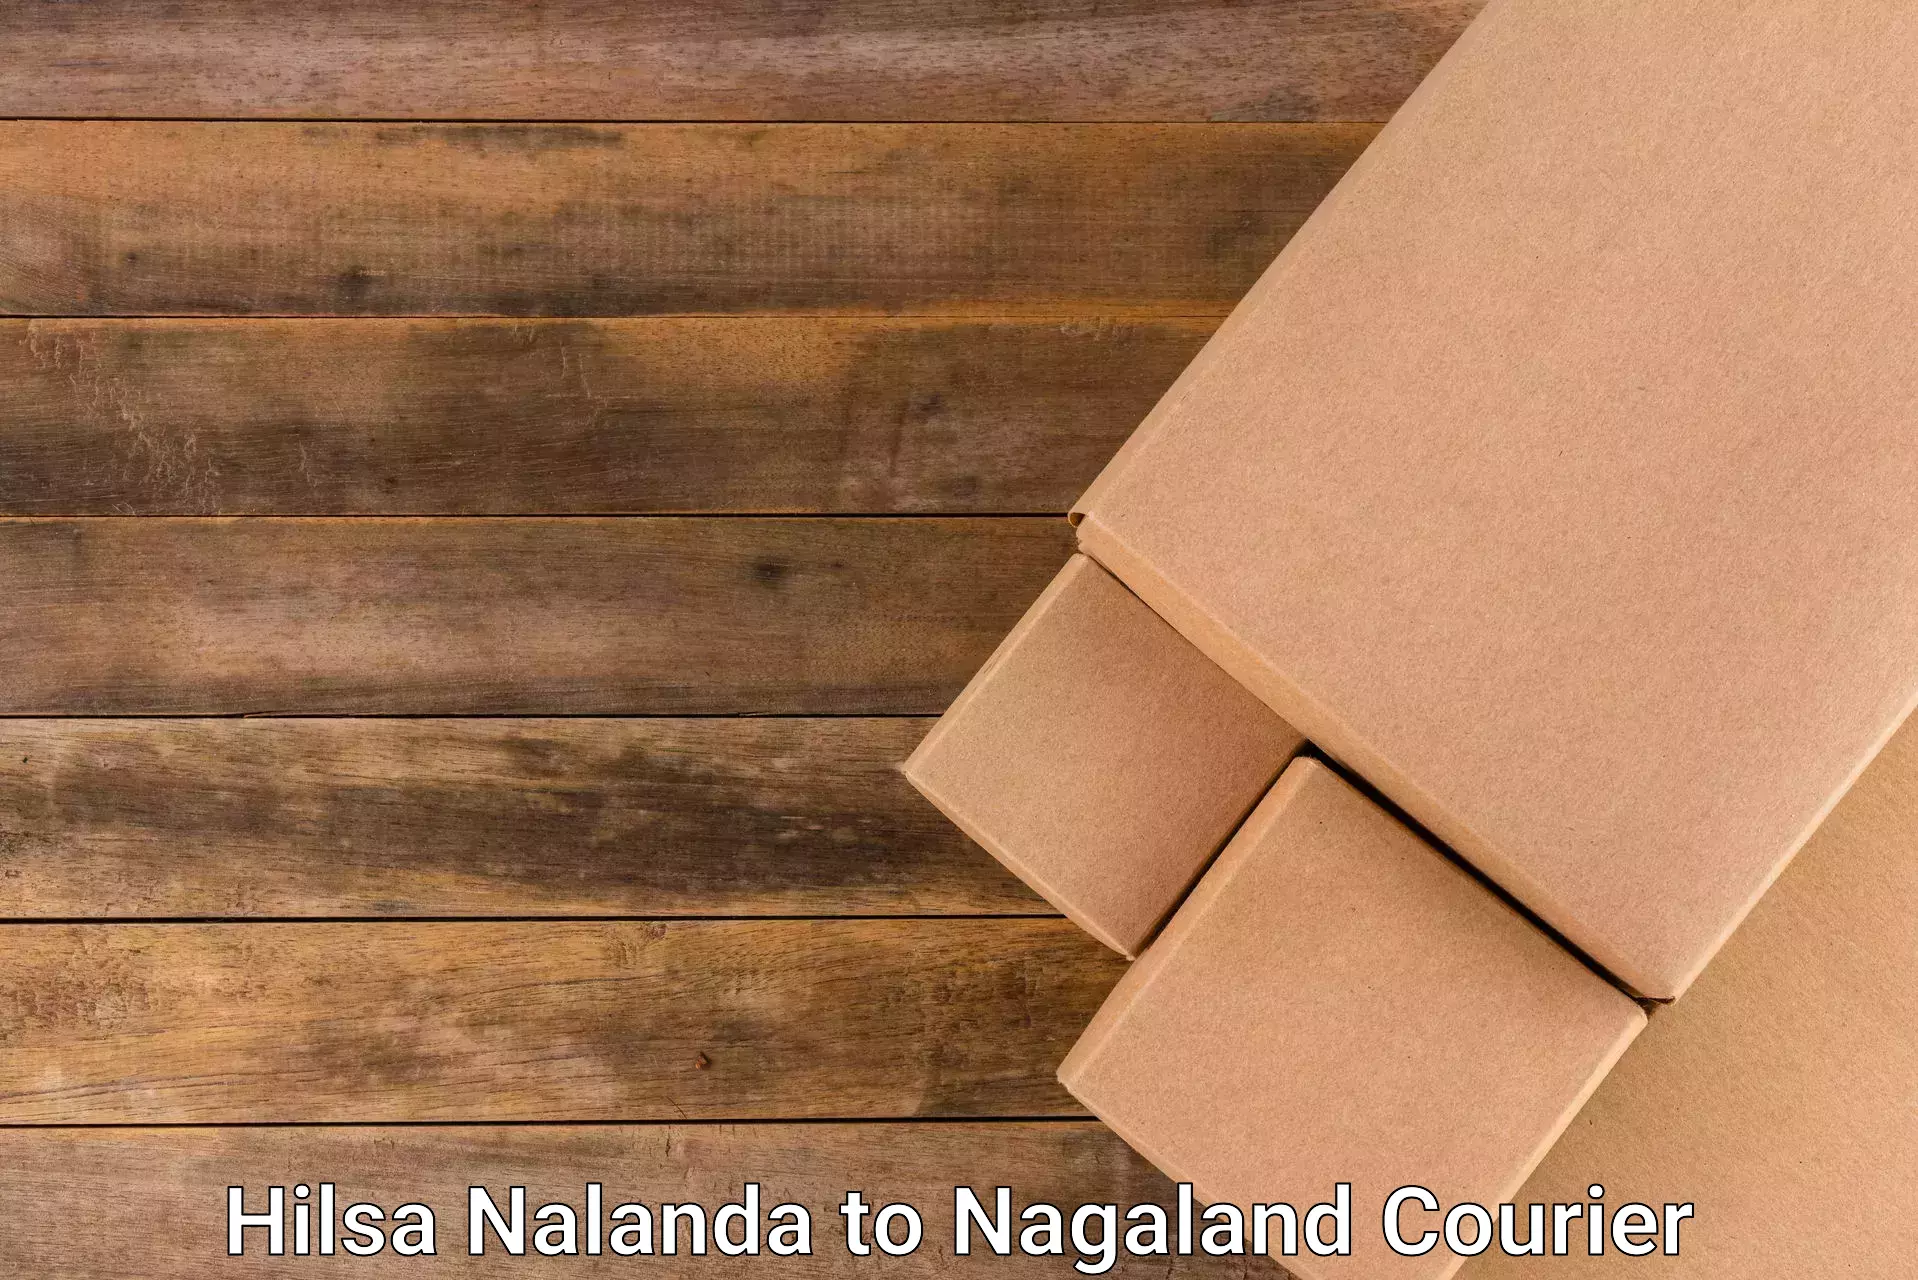 Global courier networks Hilsa Nalanda to Wokha